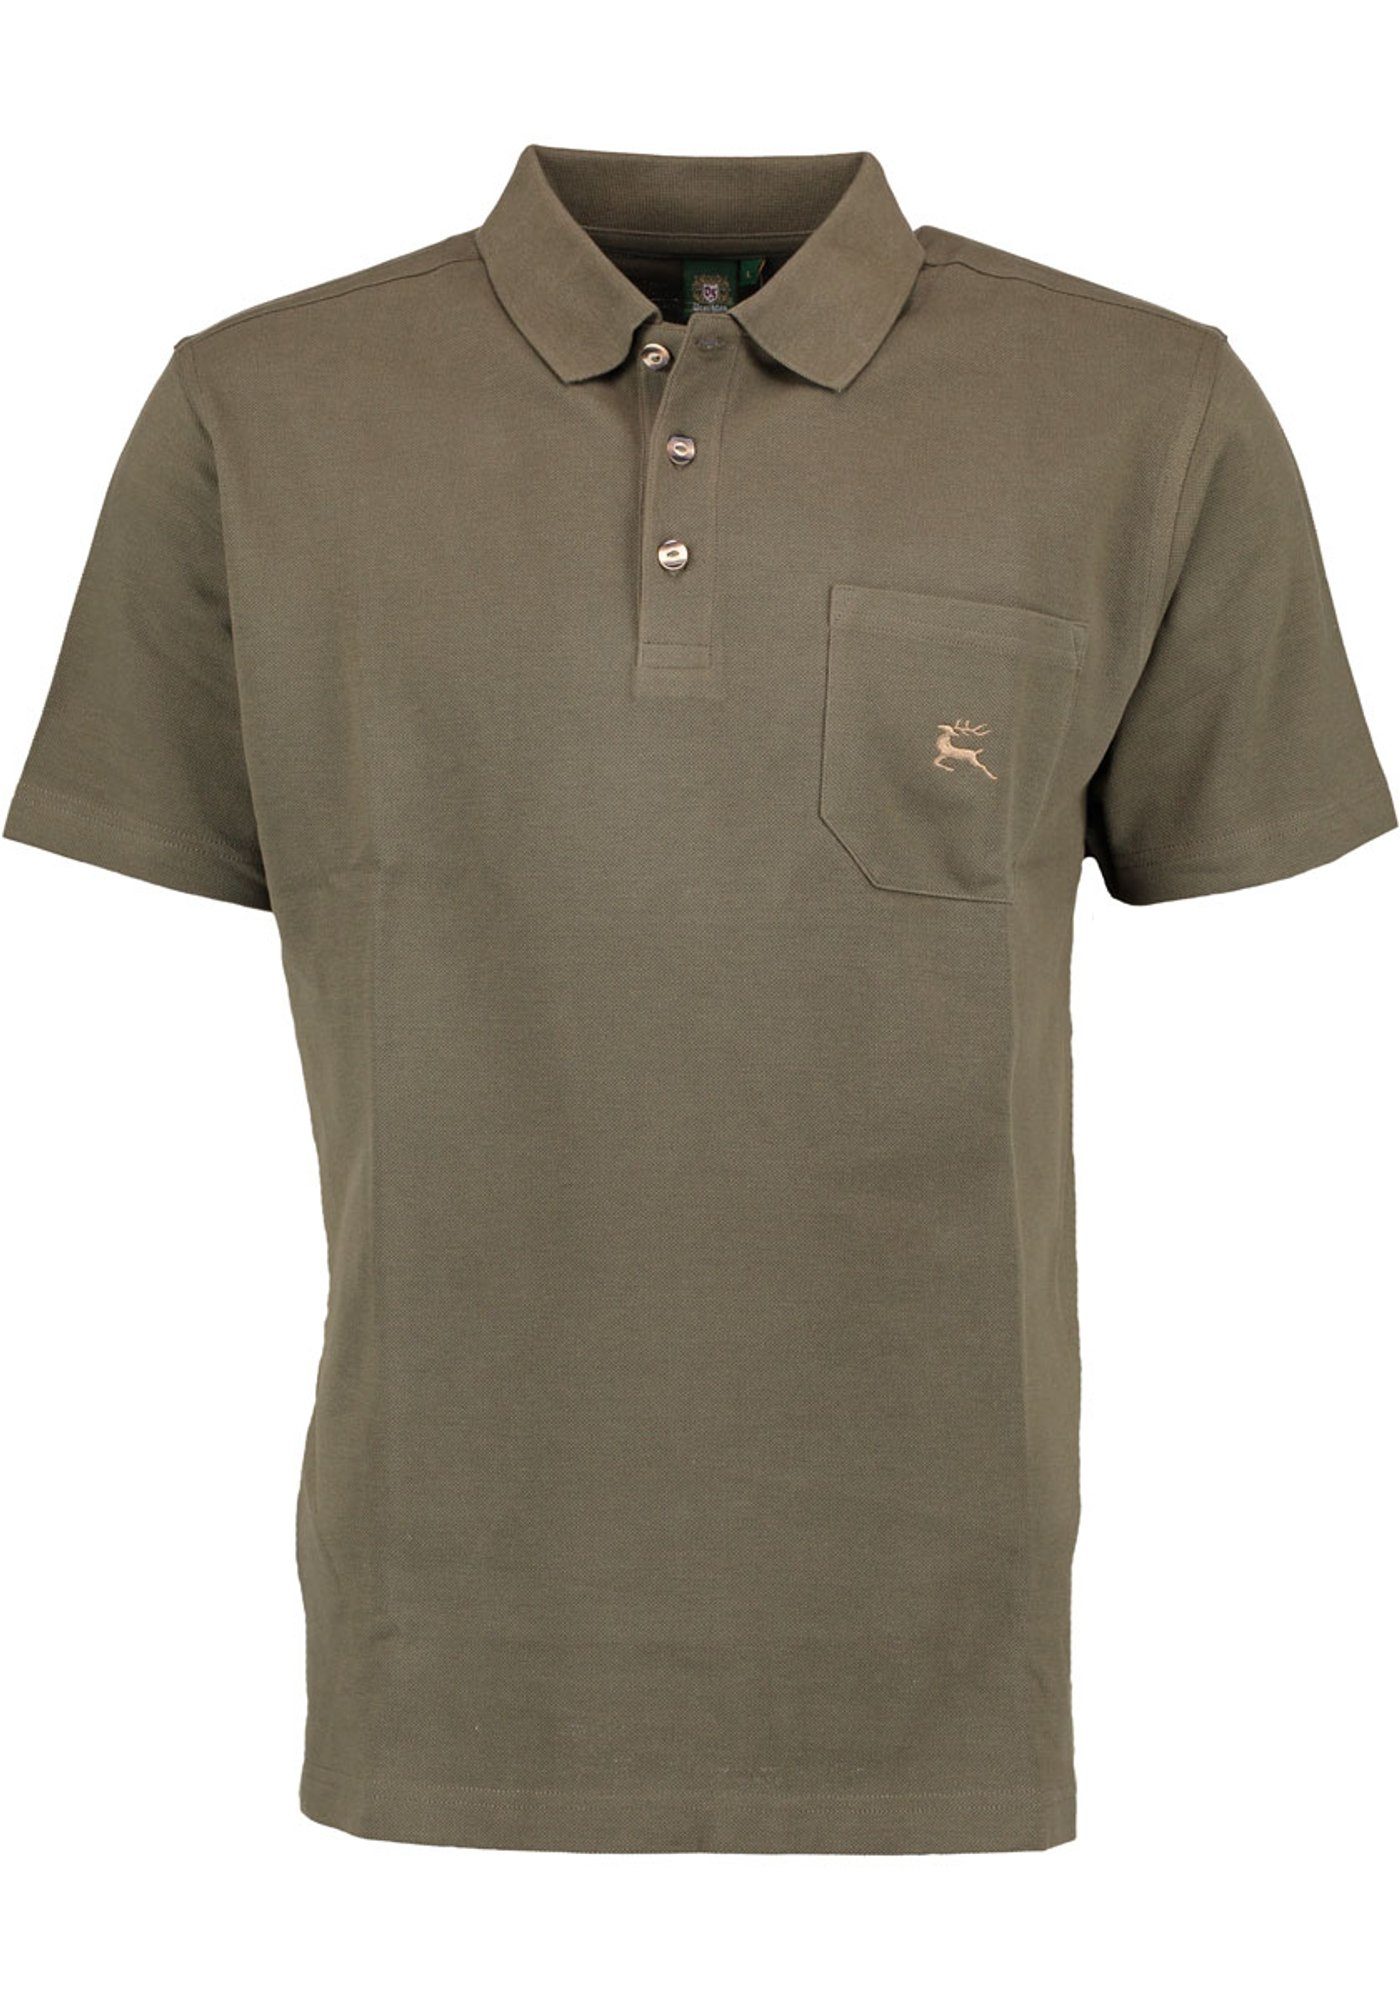 OS-Trachten Poloshirt Niwio Herren Kurzarmshirt mit Hirsch-Stickerei auf der Brusttasche khaki/schlamm